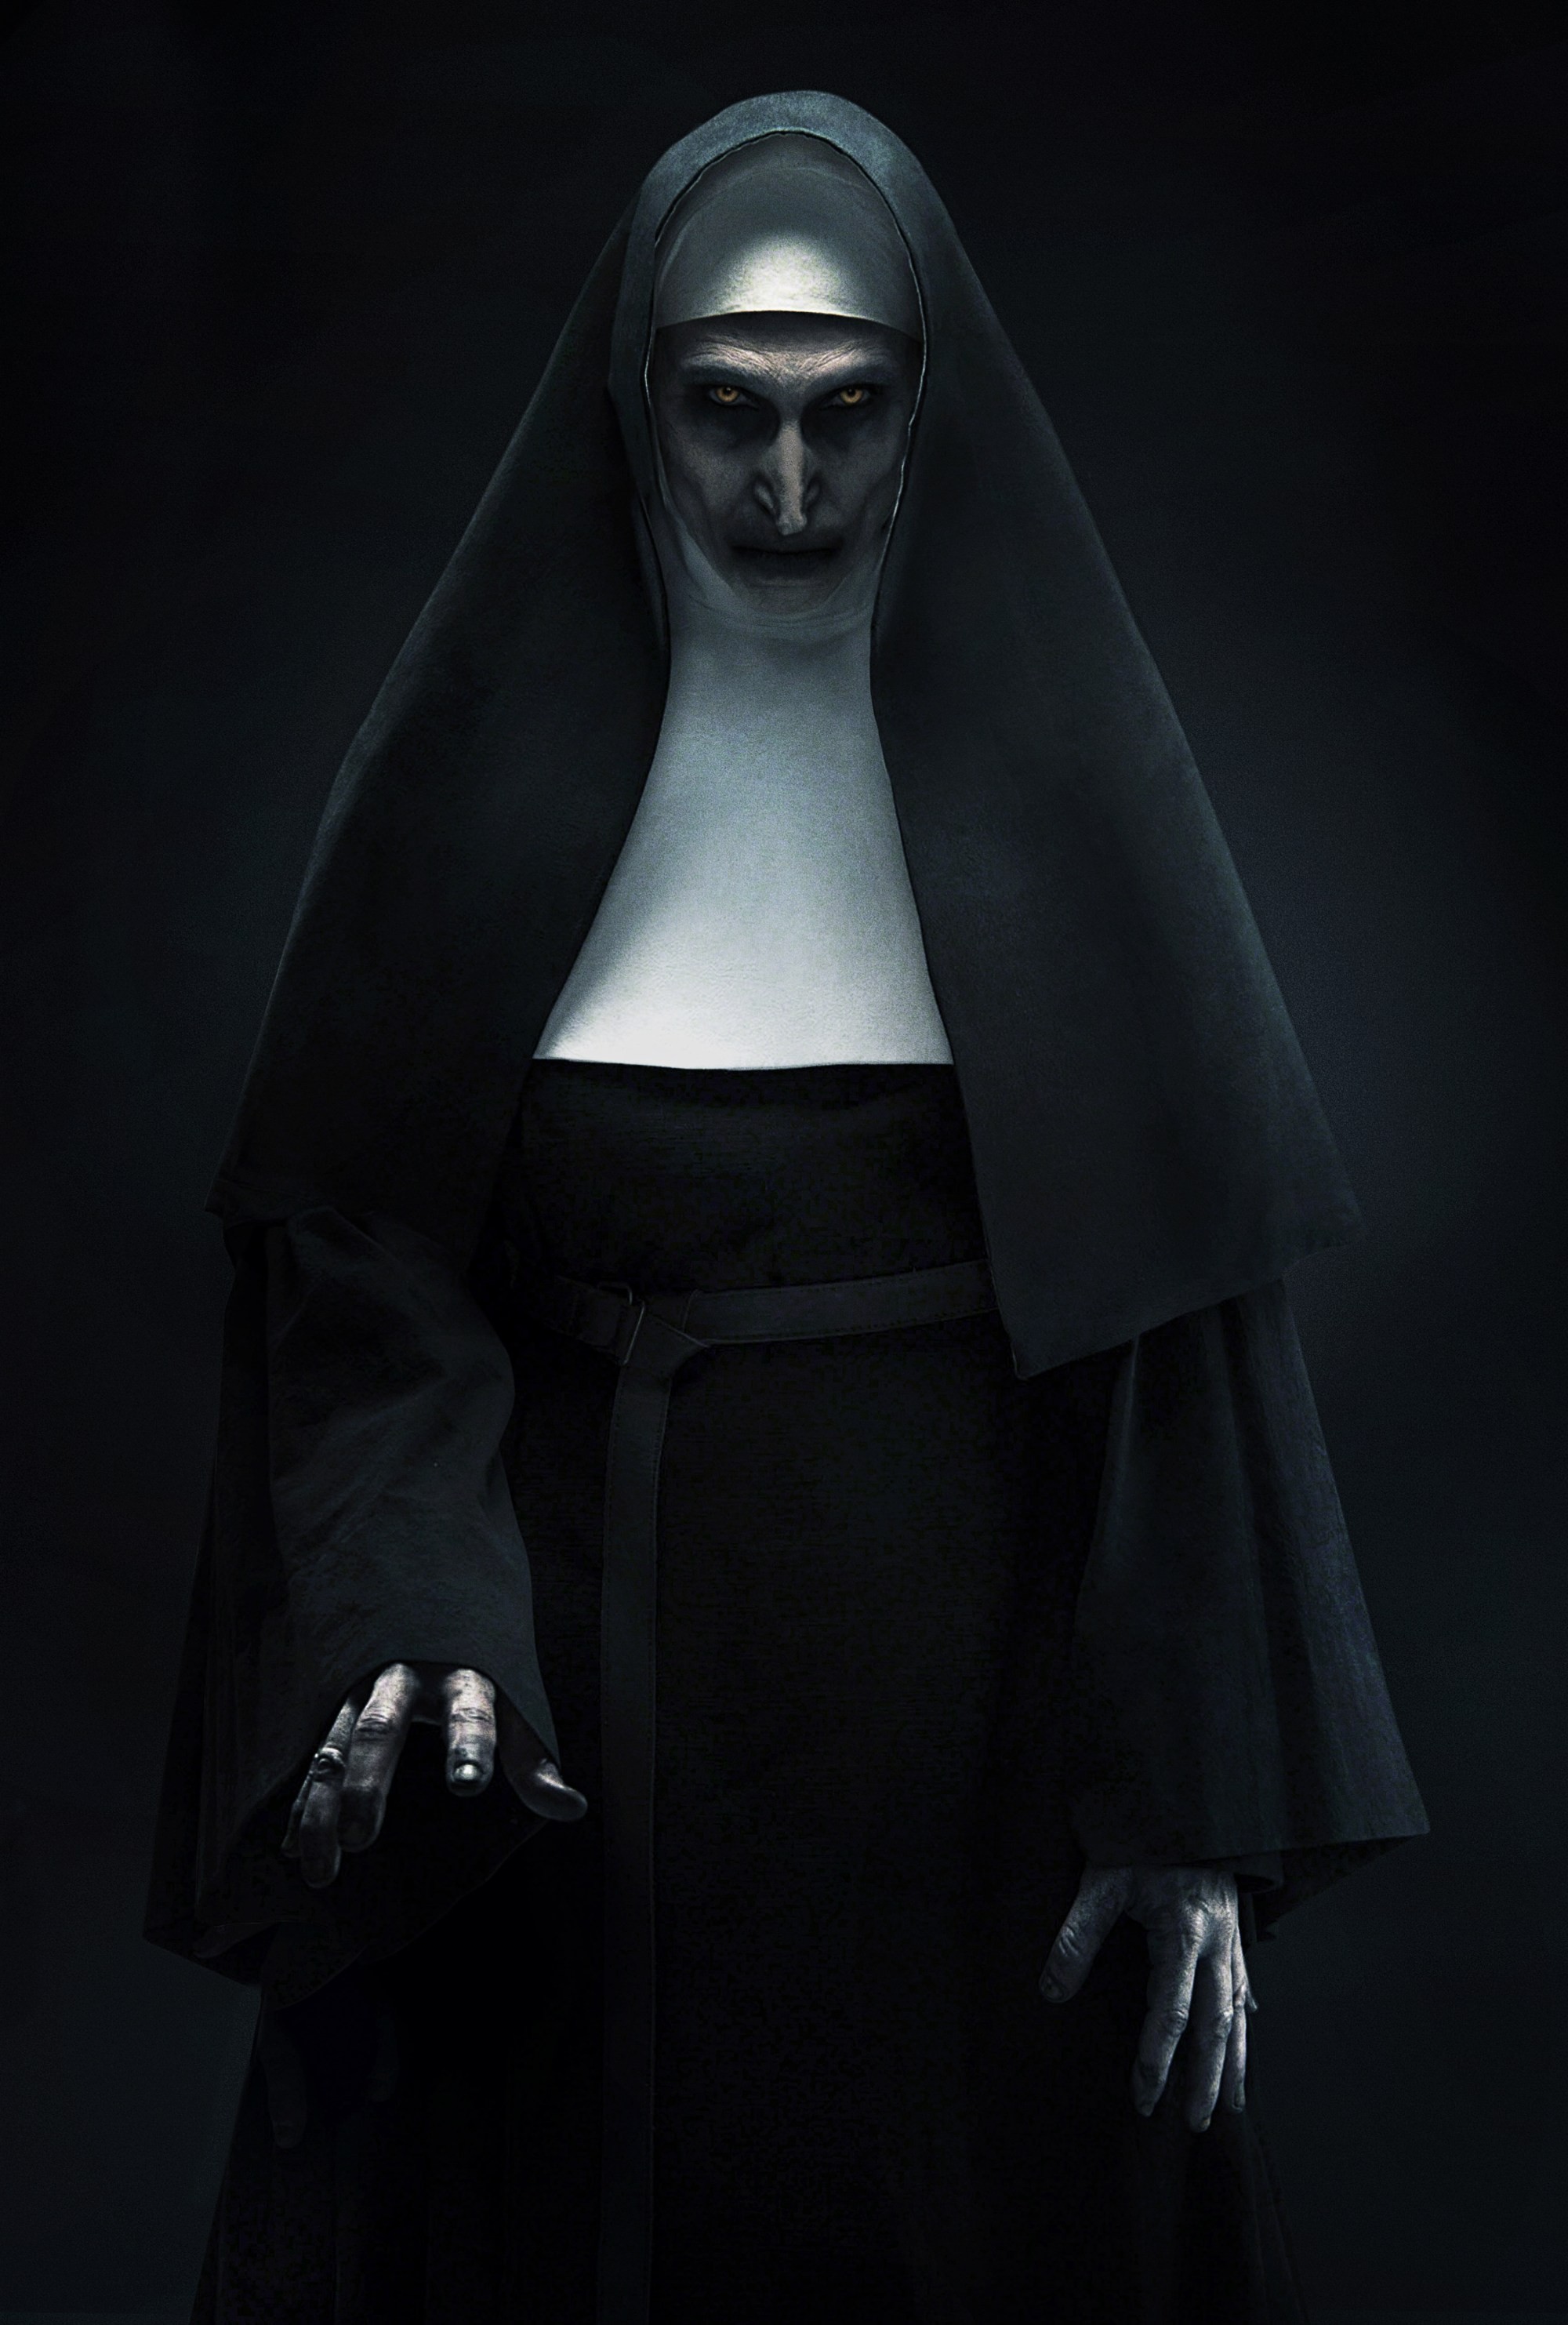 Người đeo đồng hồ Valak - một trong những nhân vật kinh dị nhất trong loạt phim Kinh Thánh ác quỷ. Hãy tìm hiểu nguồn gốc của Valak trong The Nun và khám phá những bí mật đen tối đang chờ bạn.